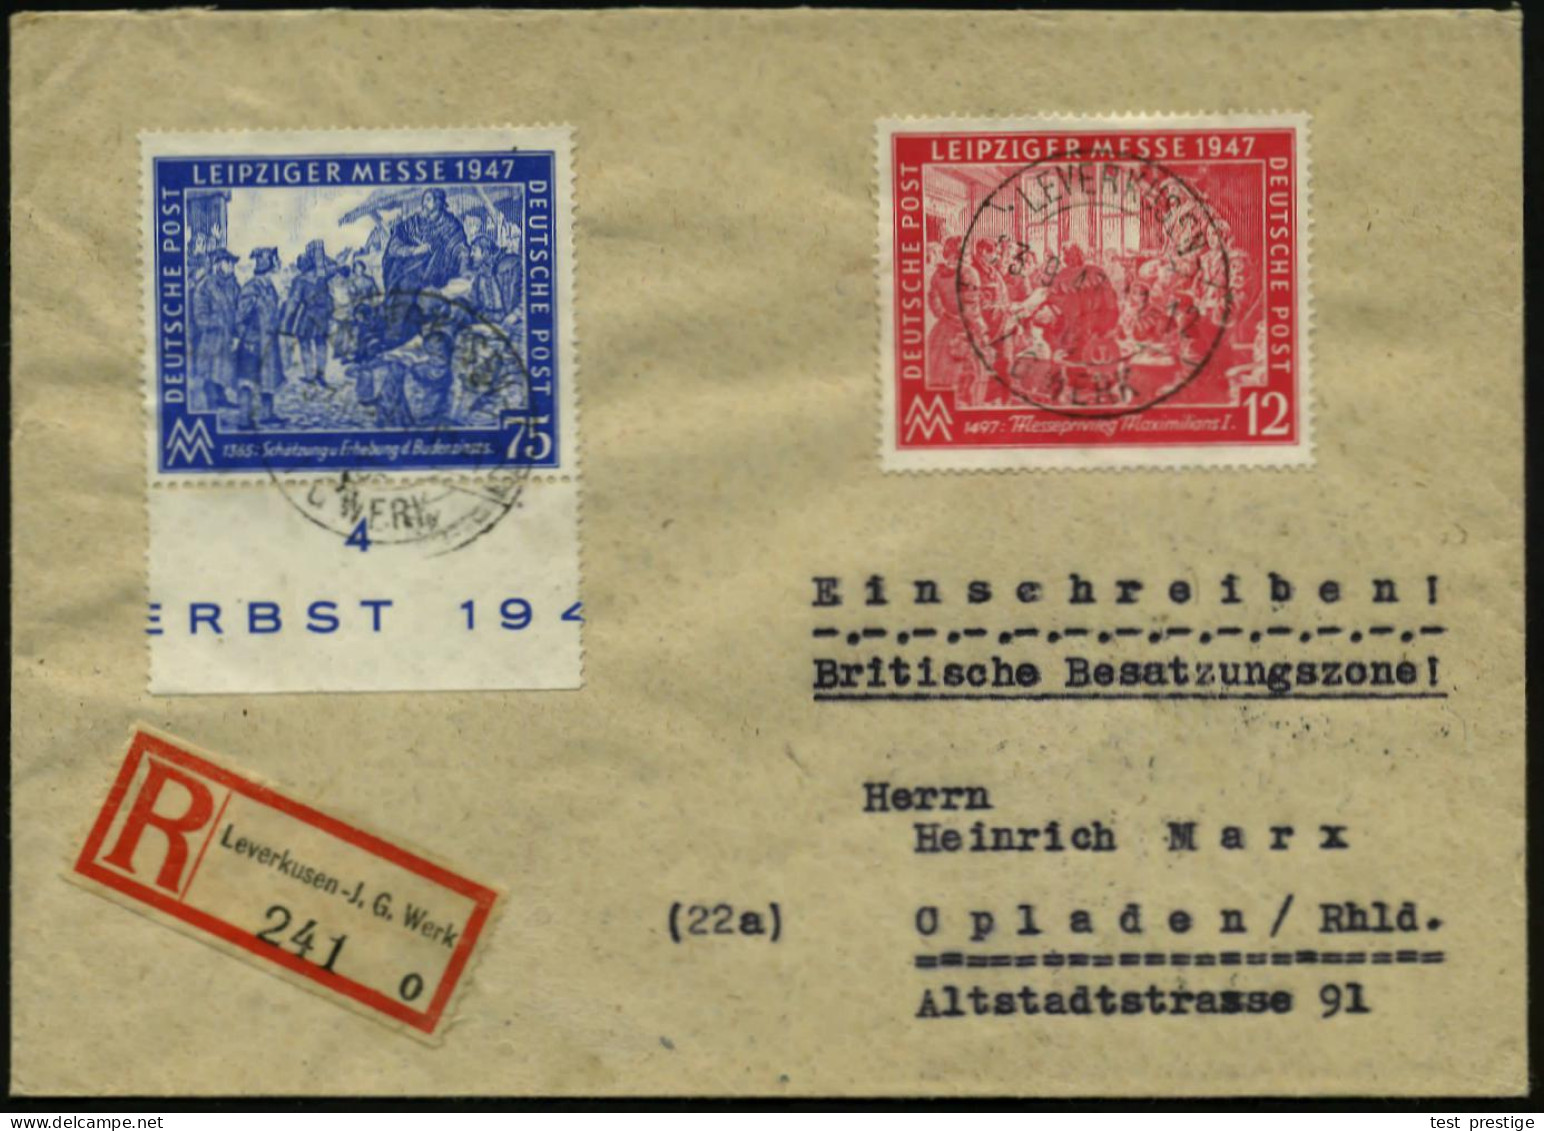 LEVERKUSEN-/ C/ I.G. WERK 1947 (23.9.) 1K-Brücke Mit UB "c", = Hauspostamt Bayer-Werk Unverändert 2x Auf Leipz. Messe-Sa - Chemie